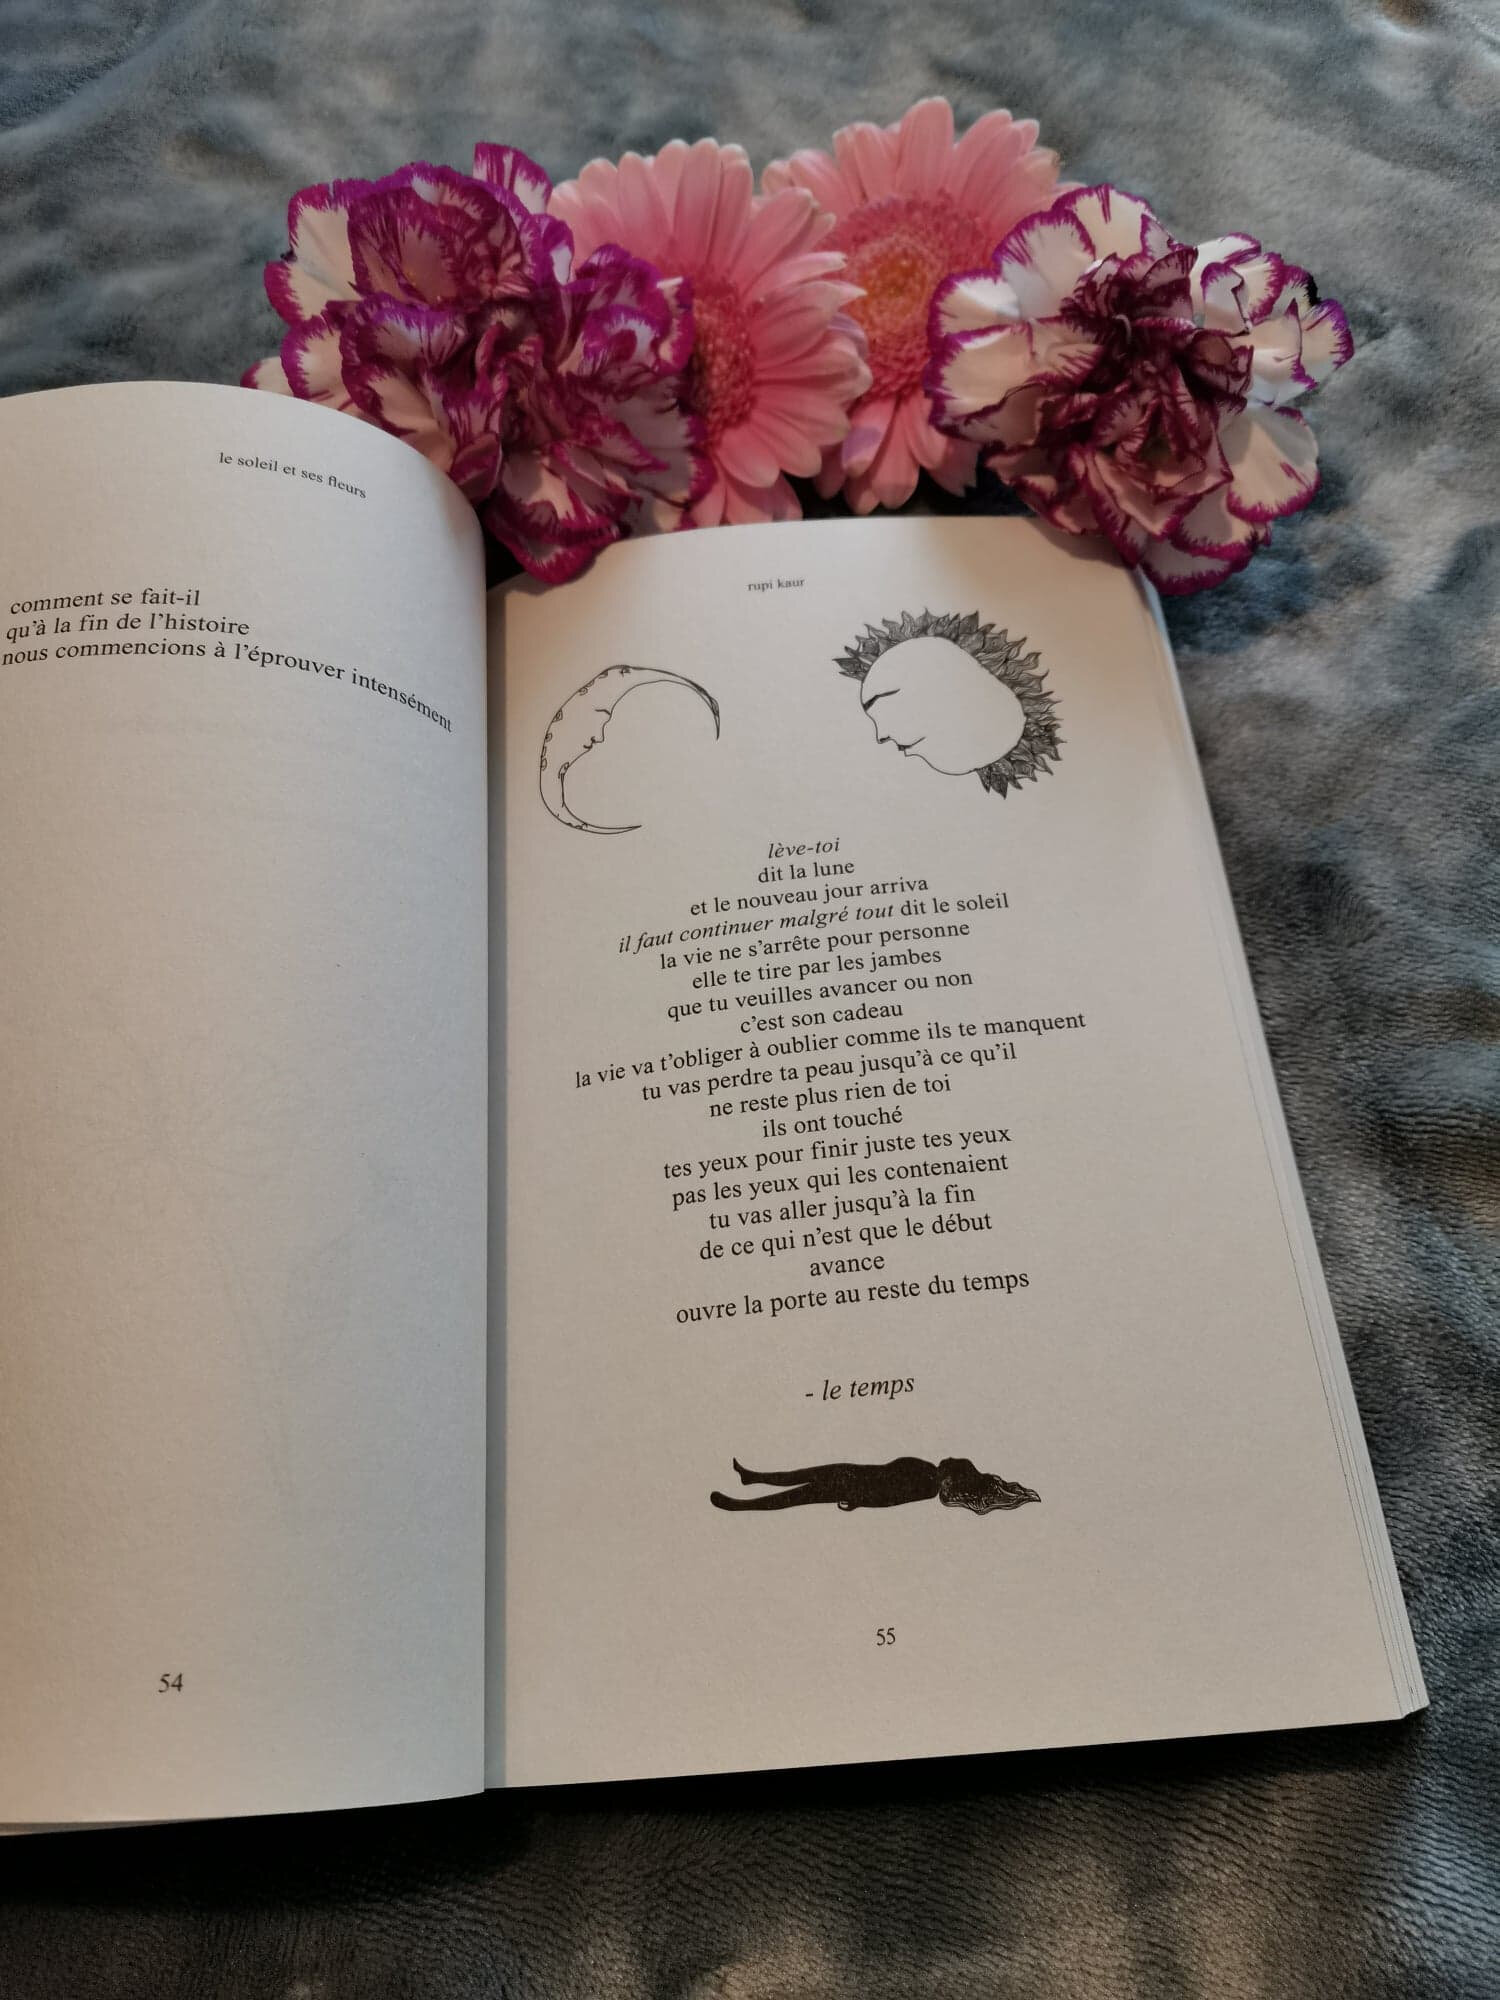 Le soleil et ses fleurs » Rupi Kaur #livre #citation #triste